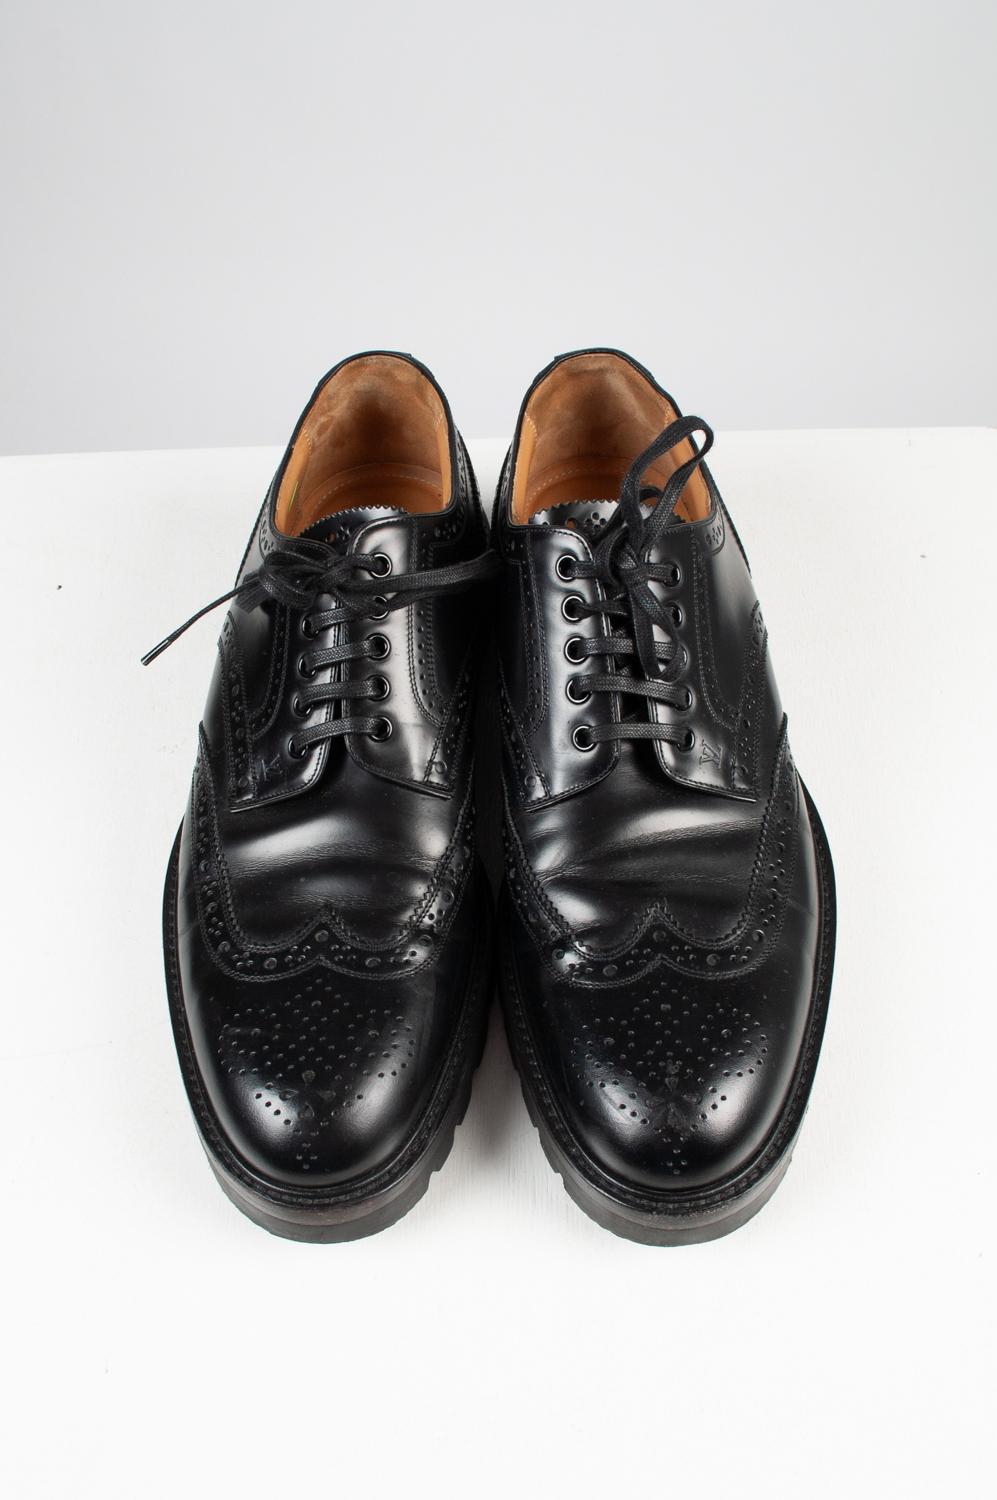 100% authentique Louis Vuitton Oxford Men Shoes, S570
Livré avec un sac à poussière.
Couleur : dos
(La couleur réelle peut varier légèrement en raison de l'interprétation individuelle de l'écran de l'ordinateur).
Matière : Cuir,
Taille de